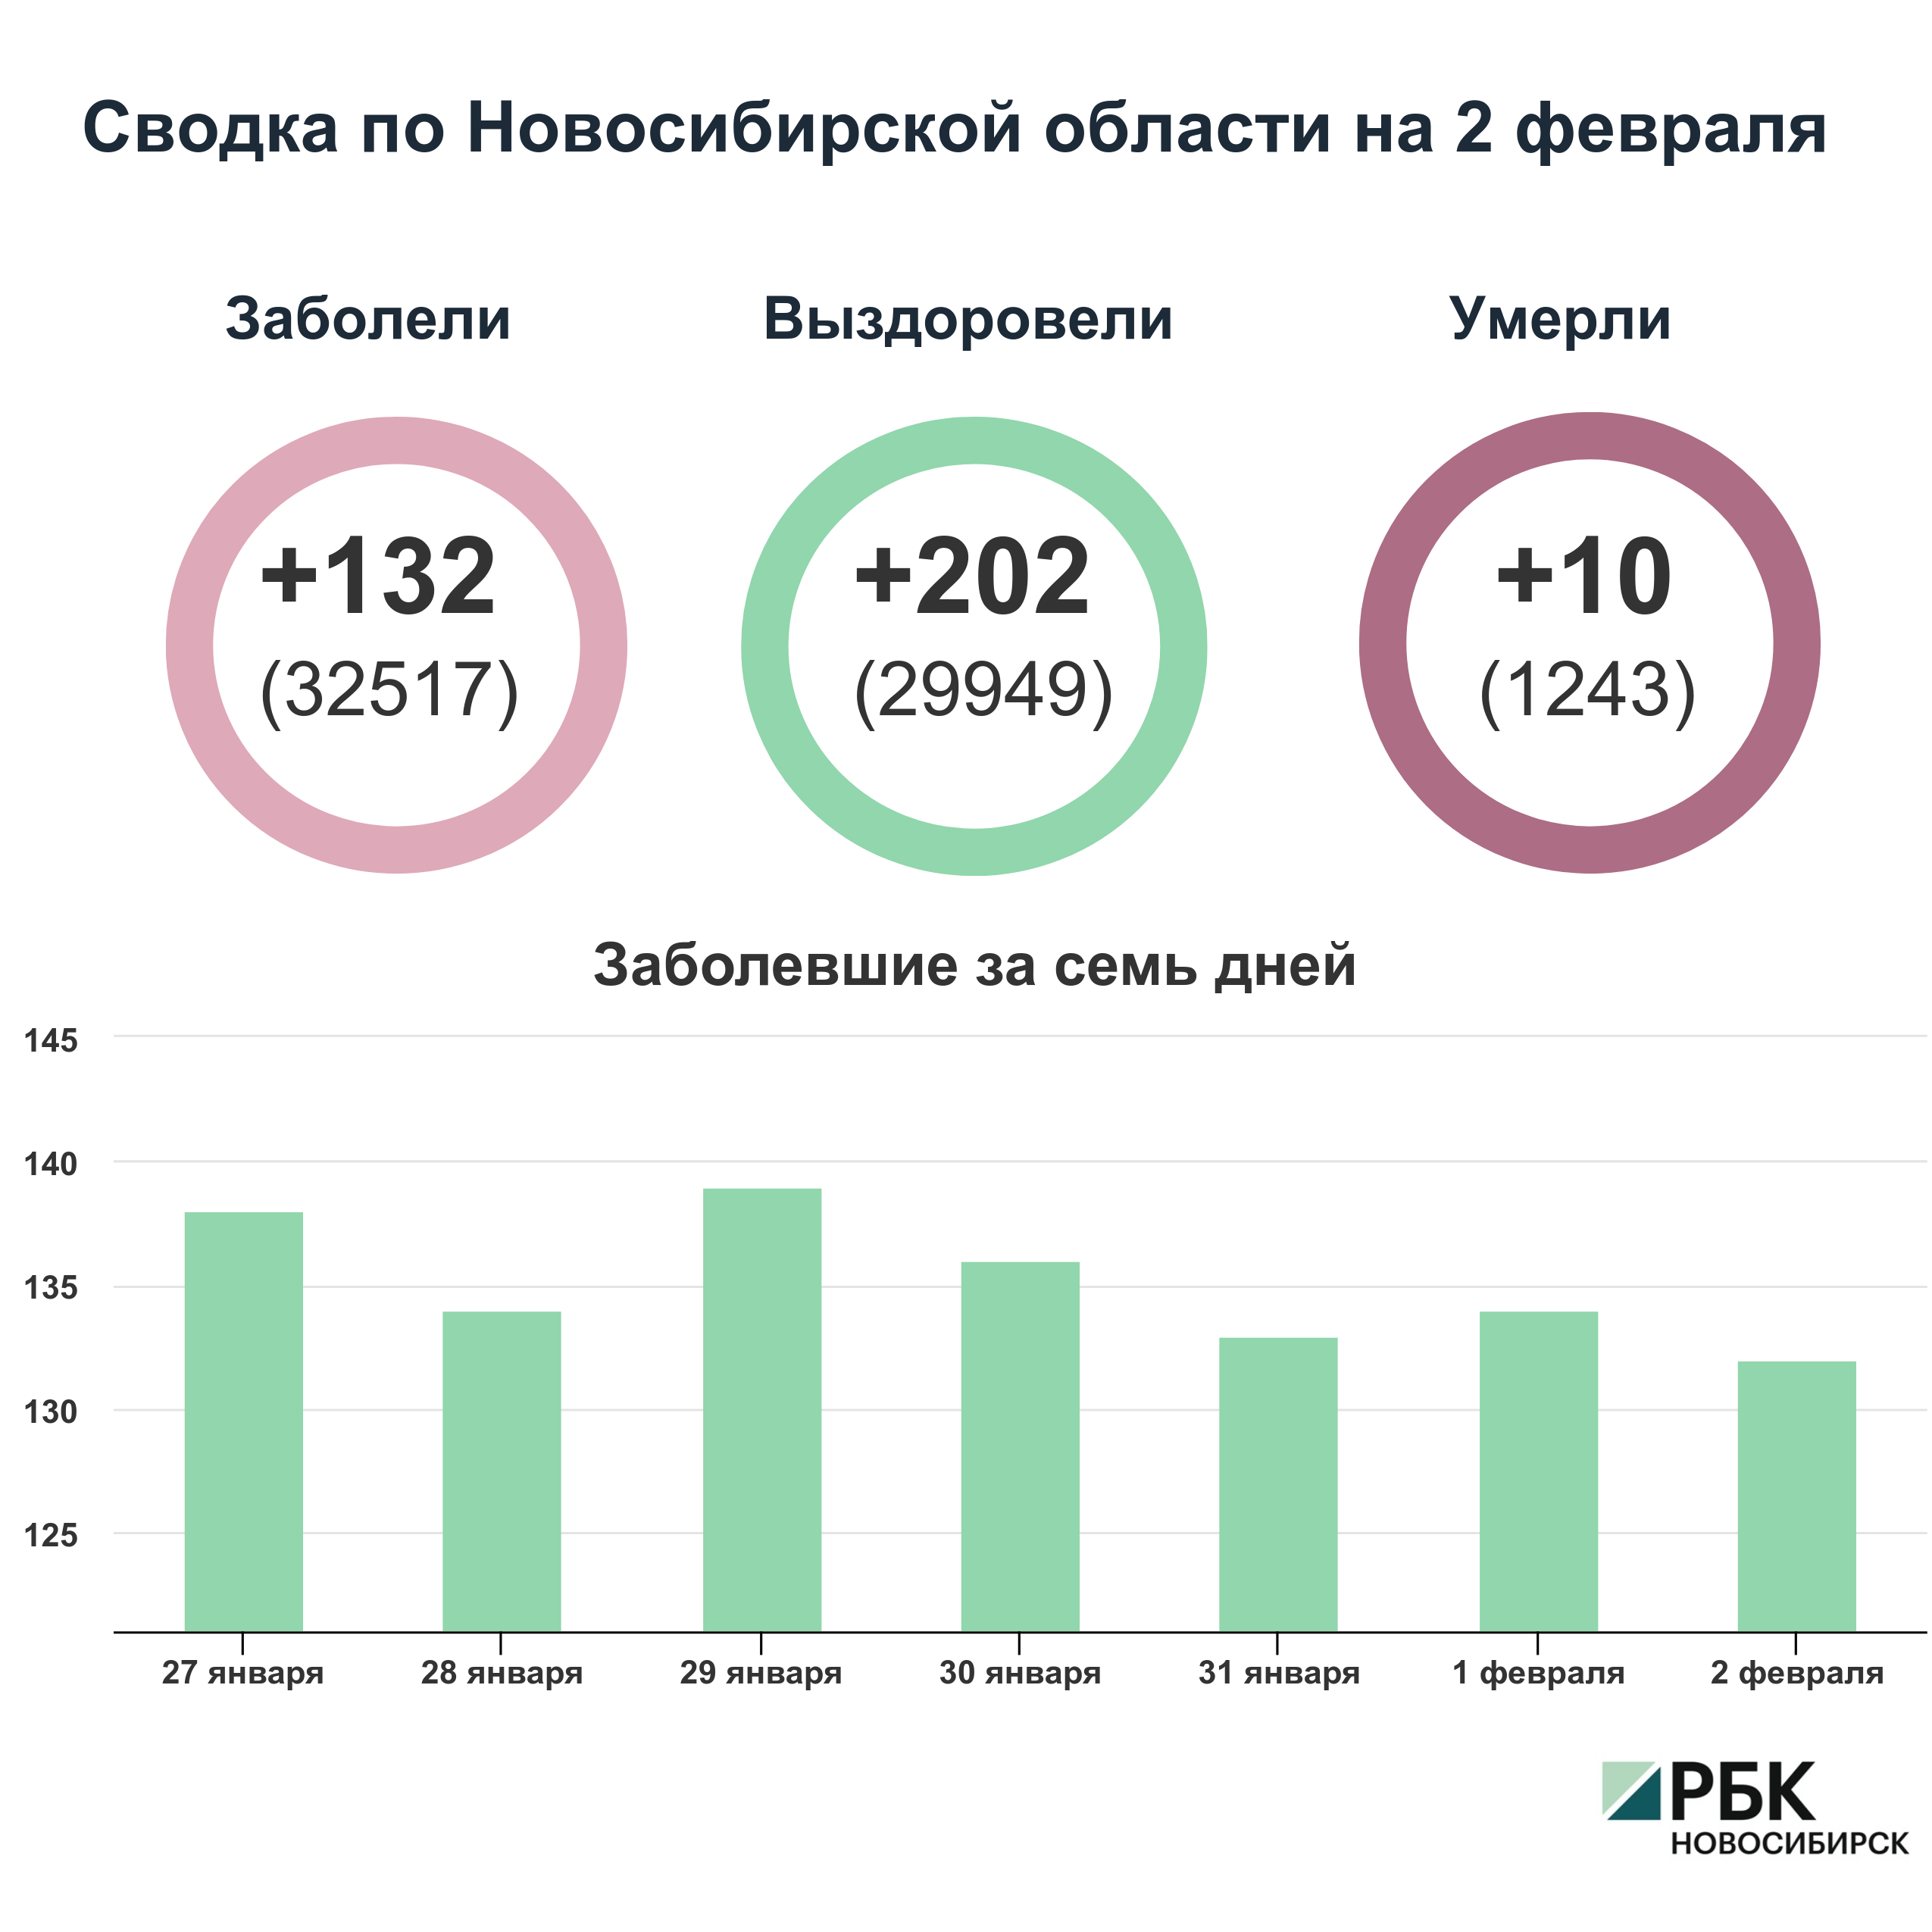 Коронавирус в Новосибирске: сводка на 2 февраля